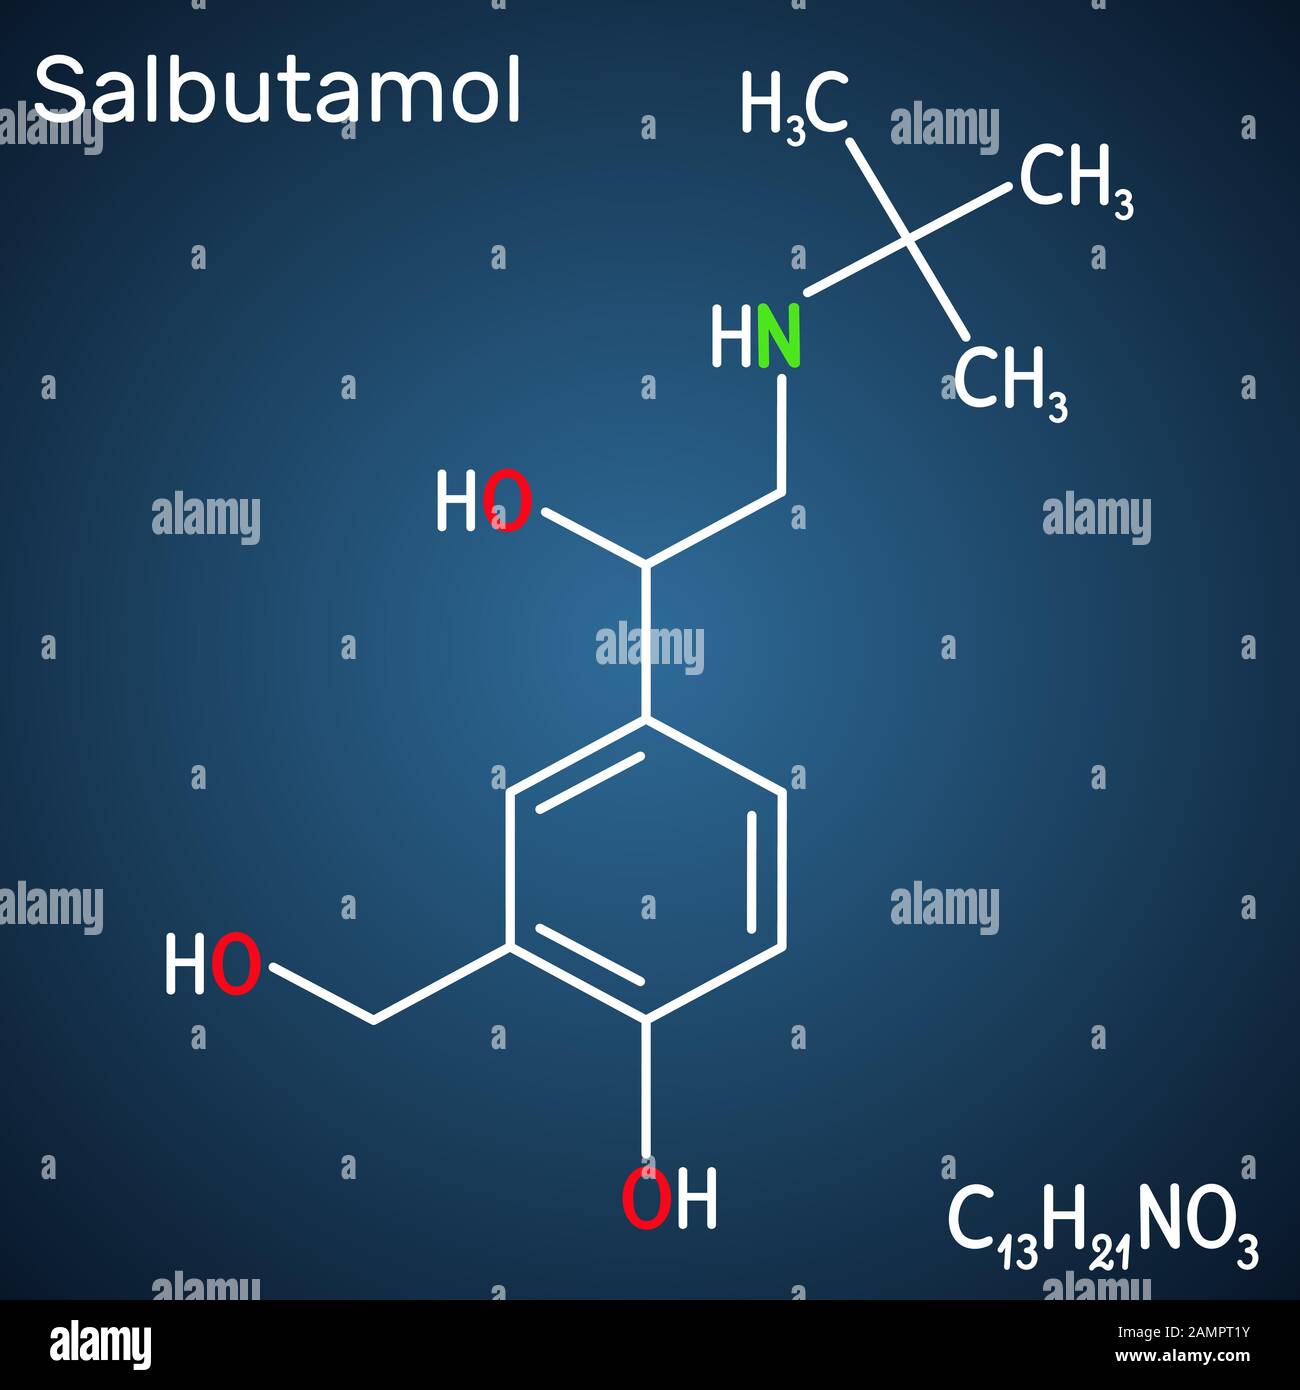 Salbutamol, Albumterol-Molekül. Es ist ein kurzwirkender Agonist, der bei der Behandlung von Asthma und COPD eingesetzt wird. Strukturelle chemische Formel auf der dunkelblauen BA Stock Vektor